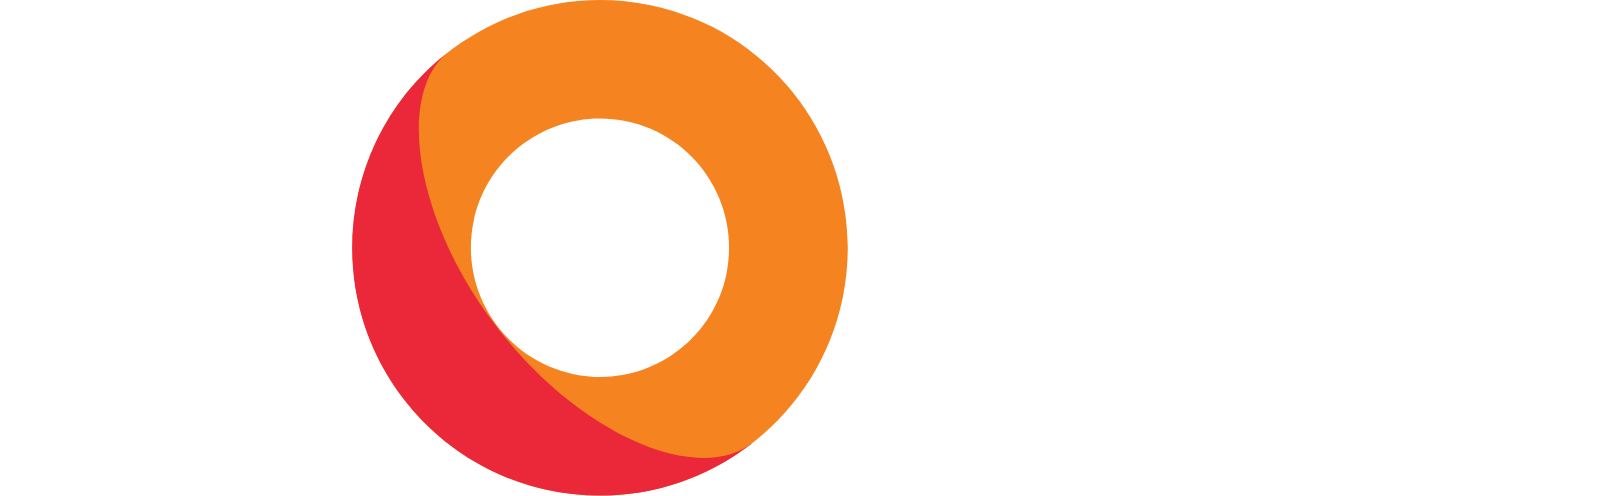 KORE logo grand pour les fonds sombres (PNG transparent)